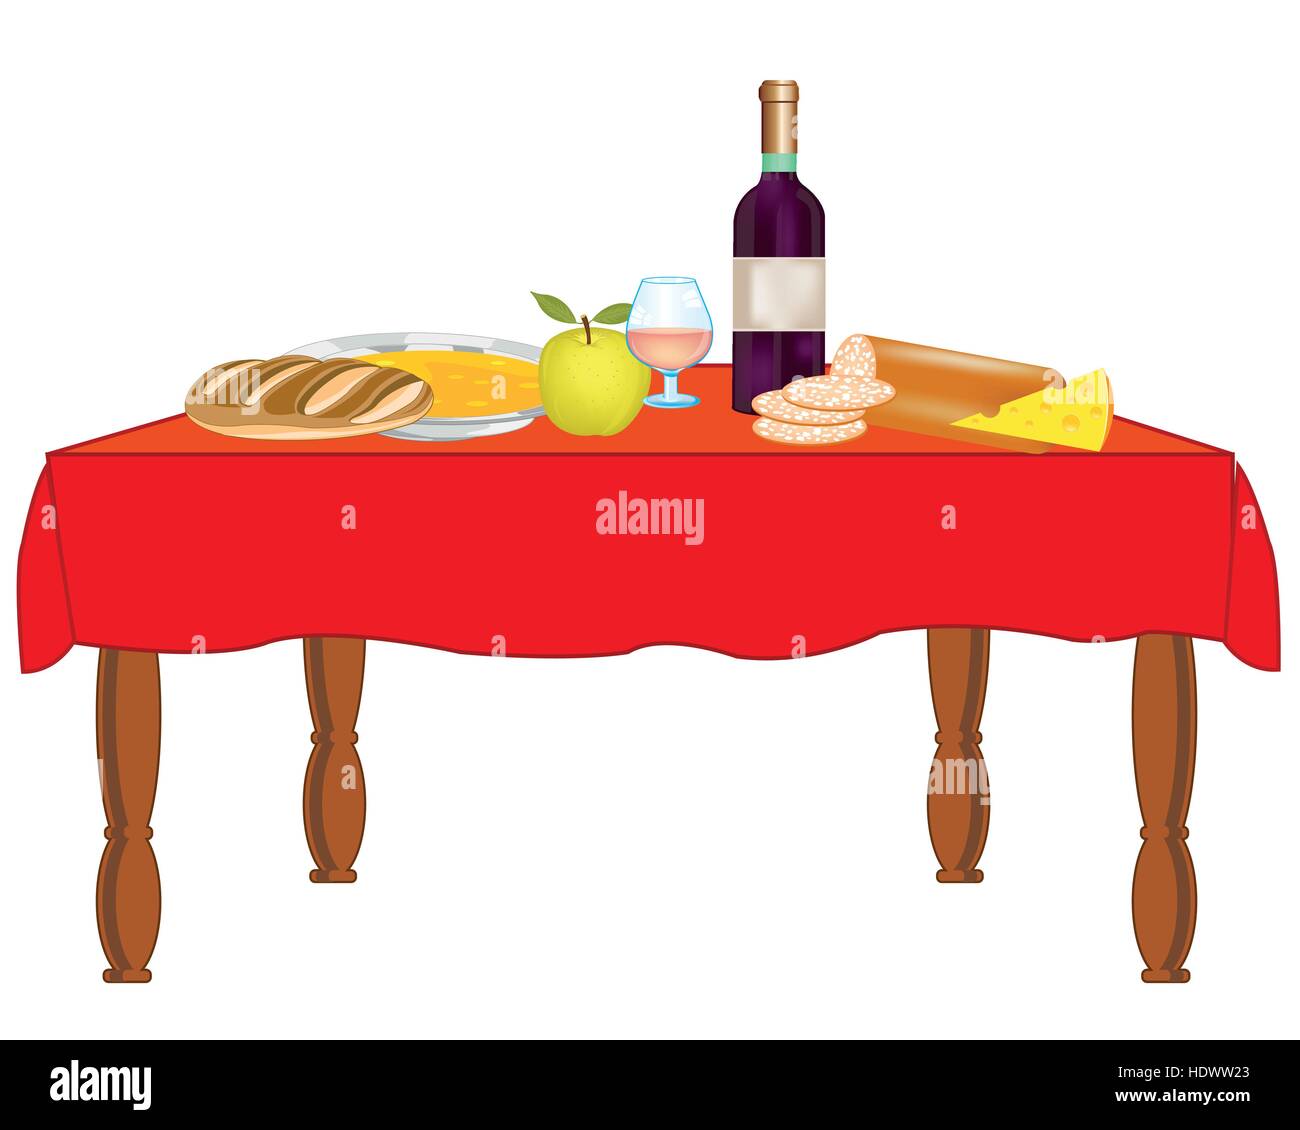 Gedeckter Tisch mit Speisen und Getränken auf weißem Hintergrund  Stock-Vektorgrafik - Alamy